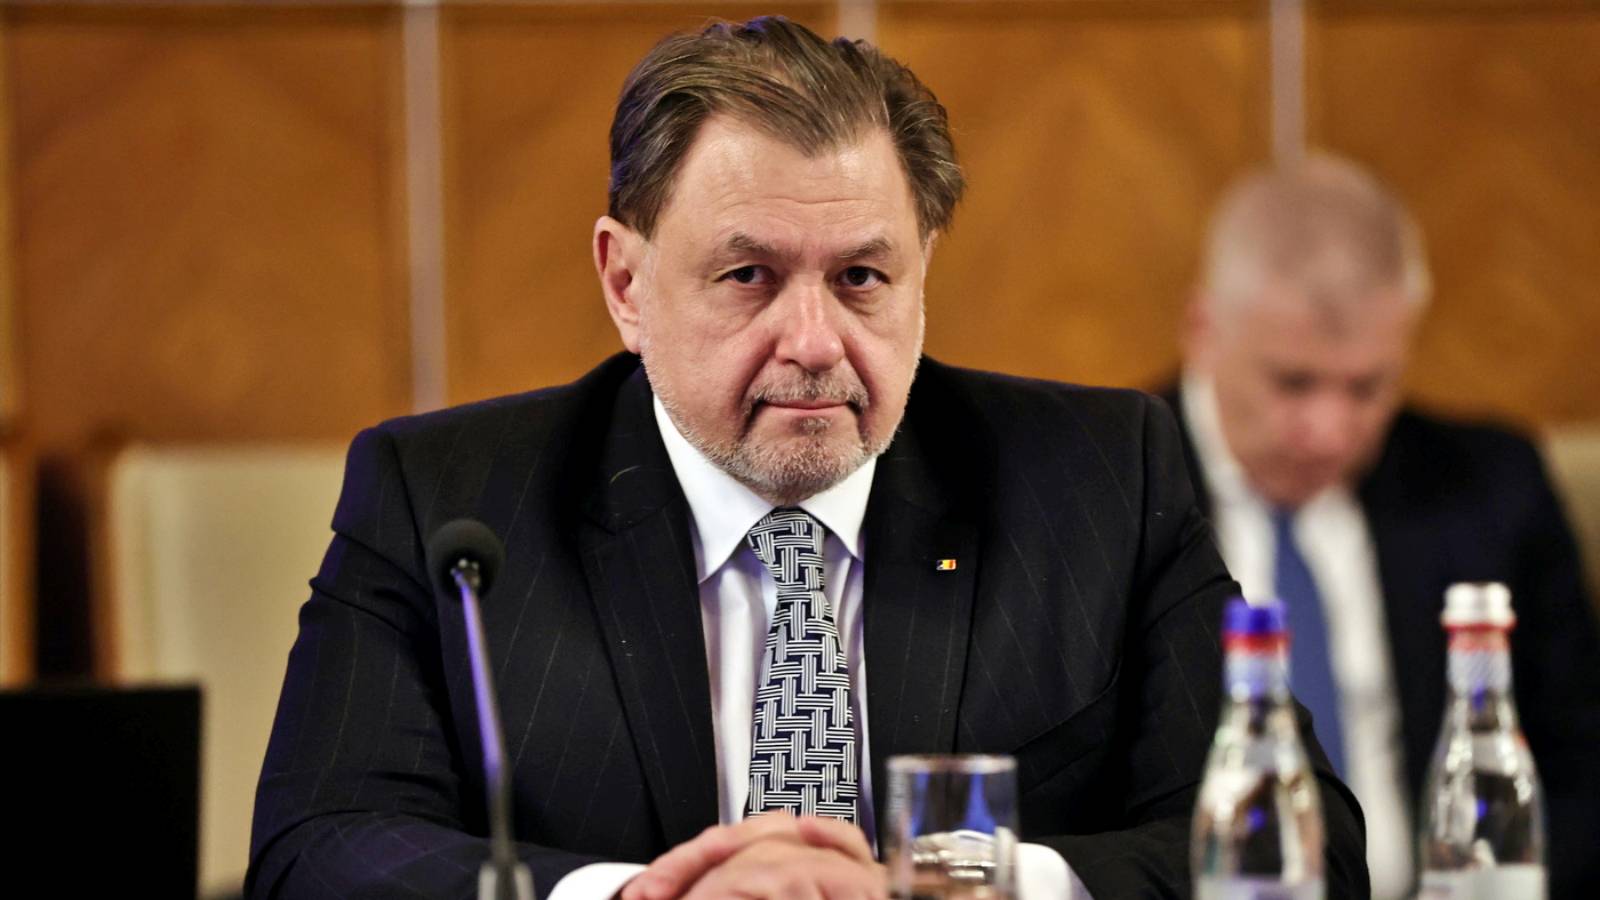 Ministre de la Santé 2 Annonces officielles très IMPORTANTES Attention aux millions de Roumains Pays